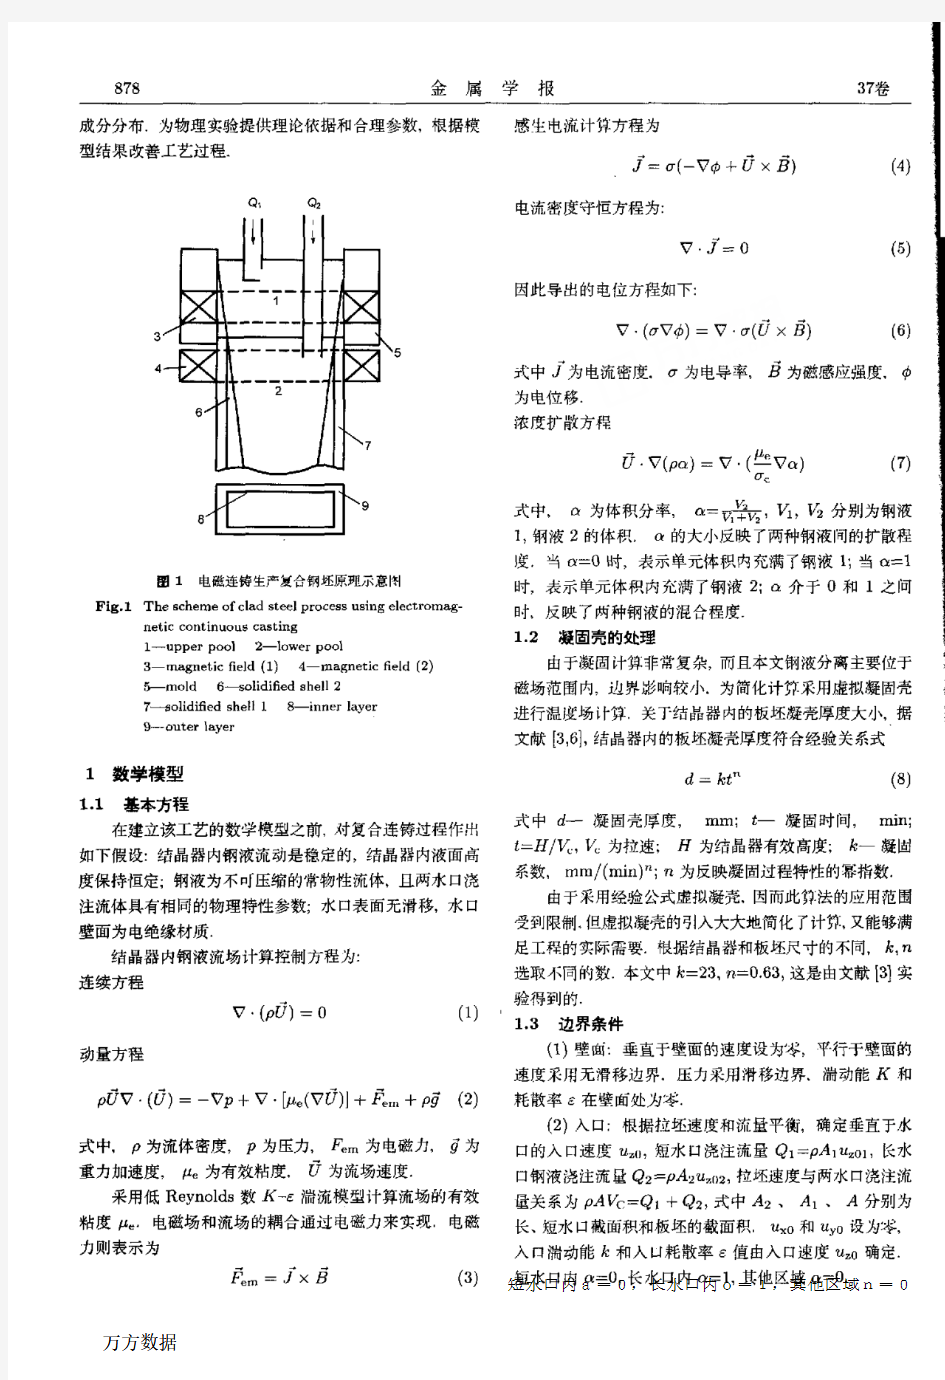 钢院 郑红霞·,全幅二段电磁制动连铸复合钢坯的模拟研究